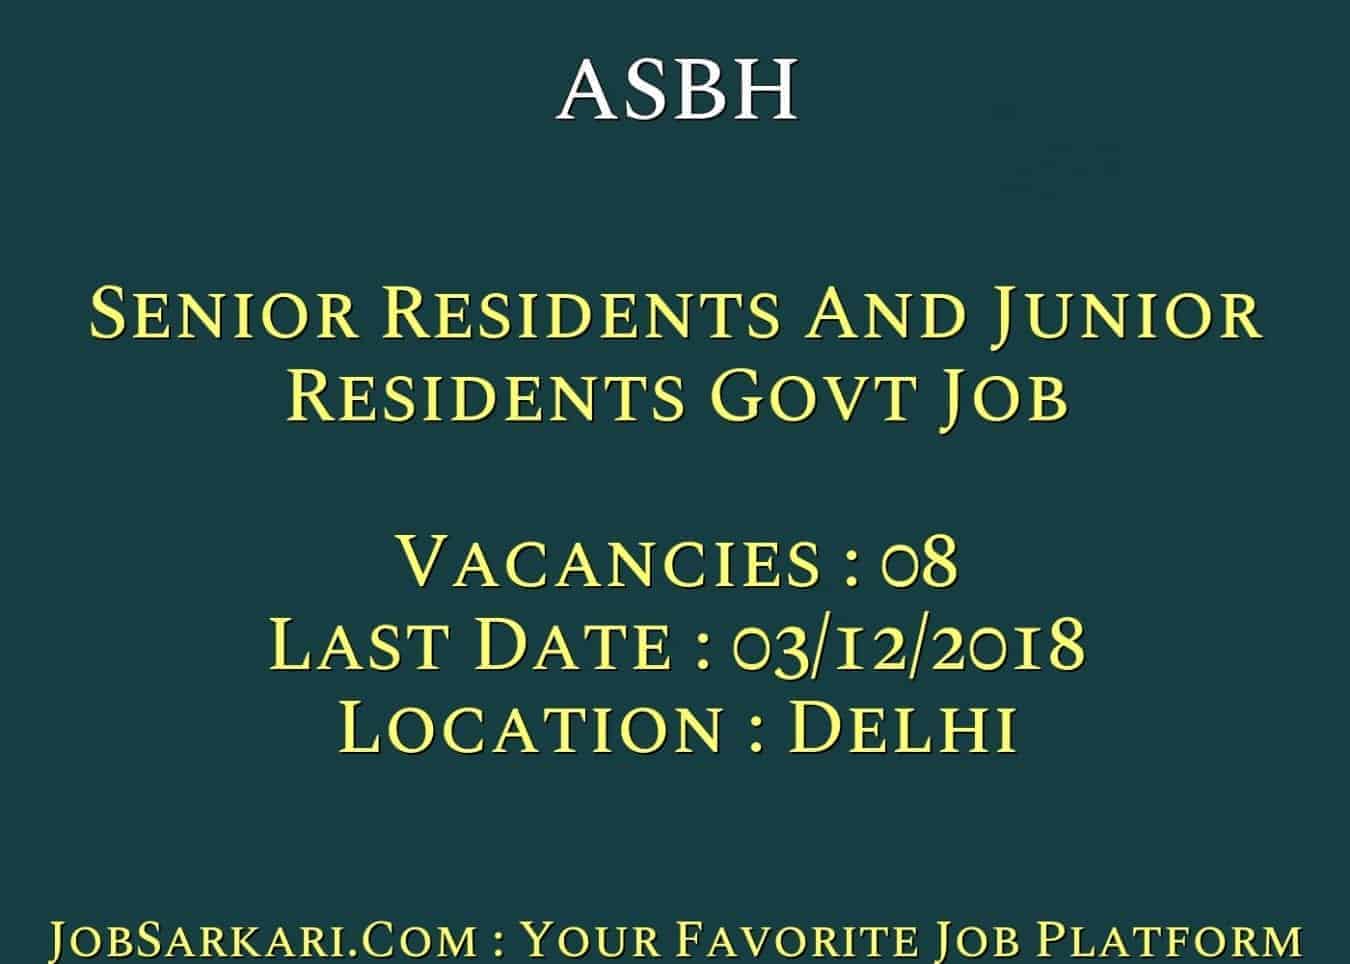 ASBH Recruitment 2018 For Senior Residents And Junior Residents Govt Job